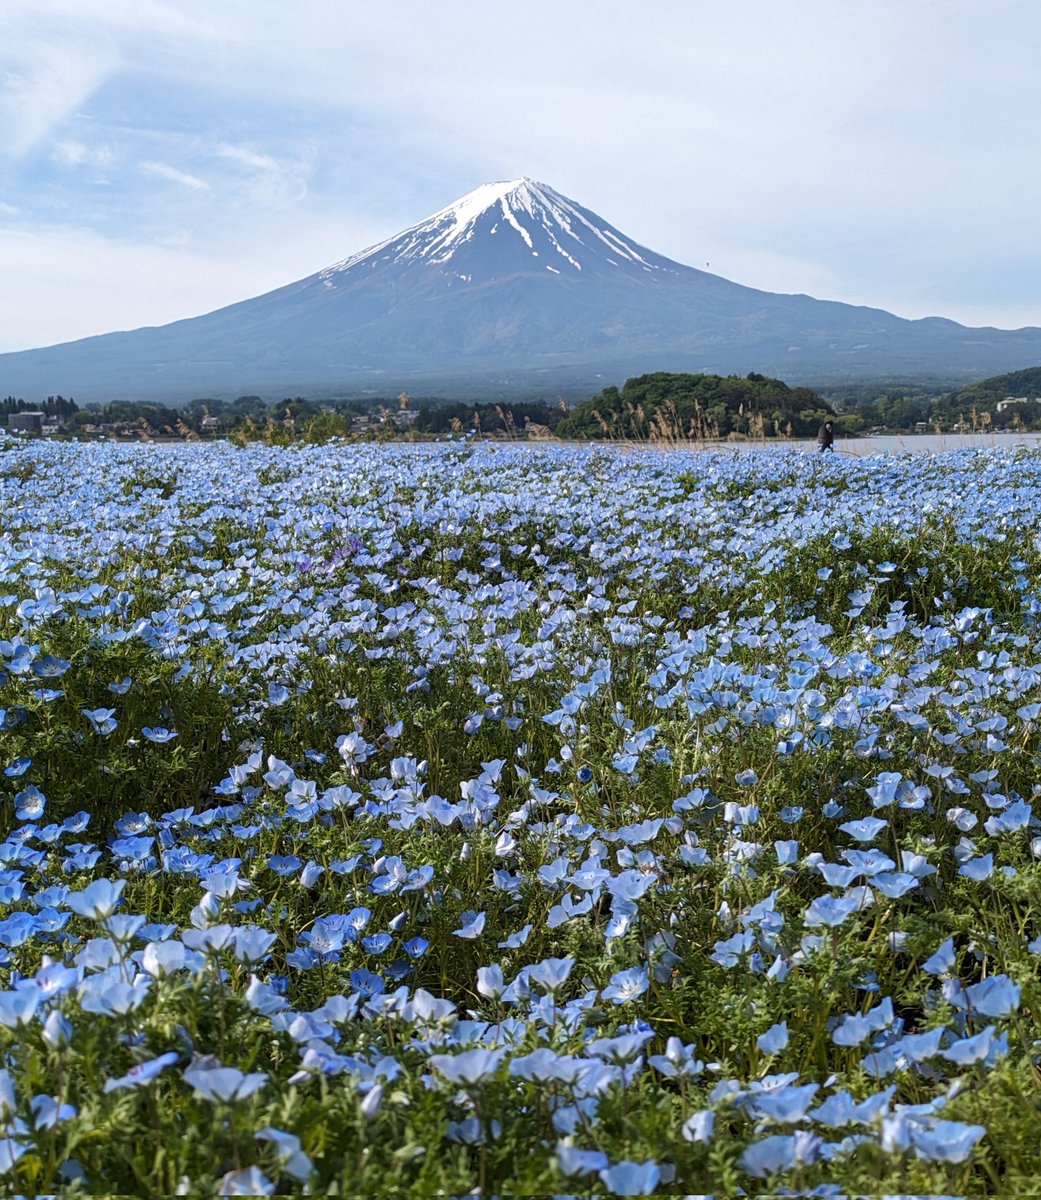 河口湖大石公園からの富士山です。ネモフィラがきれいに咲いています。
#富士山　#富士五湖　#河口湖大石公園　#ネモフィラ　#fujisan　#mtfuji